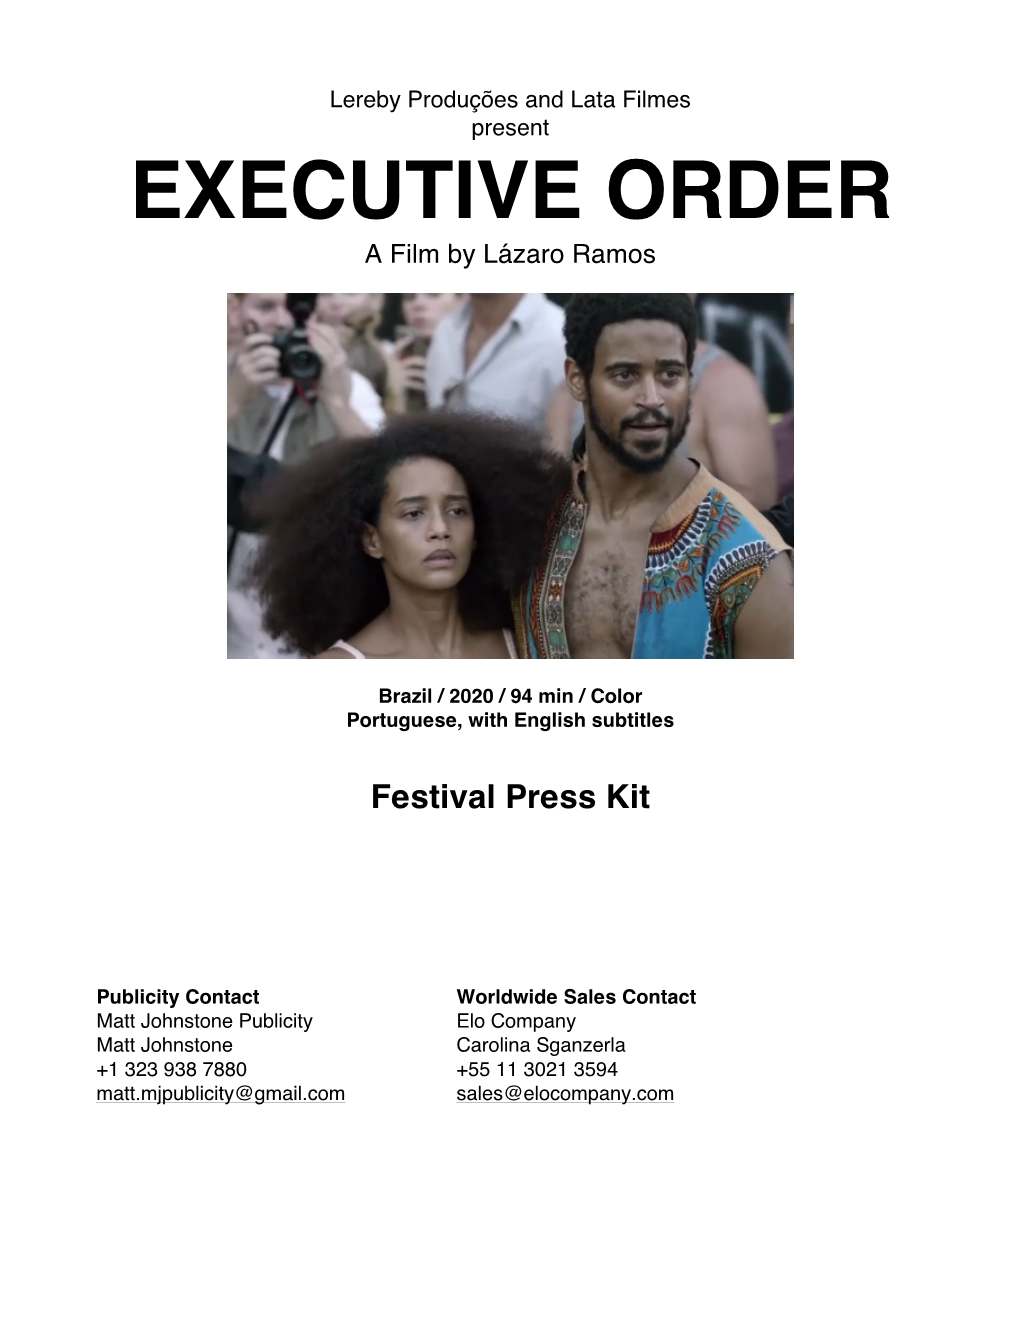 Executive Order Press